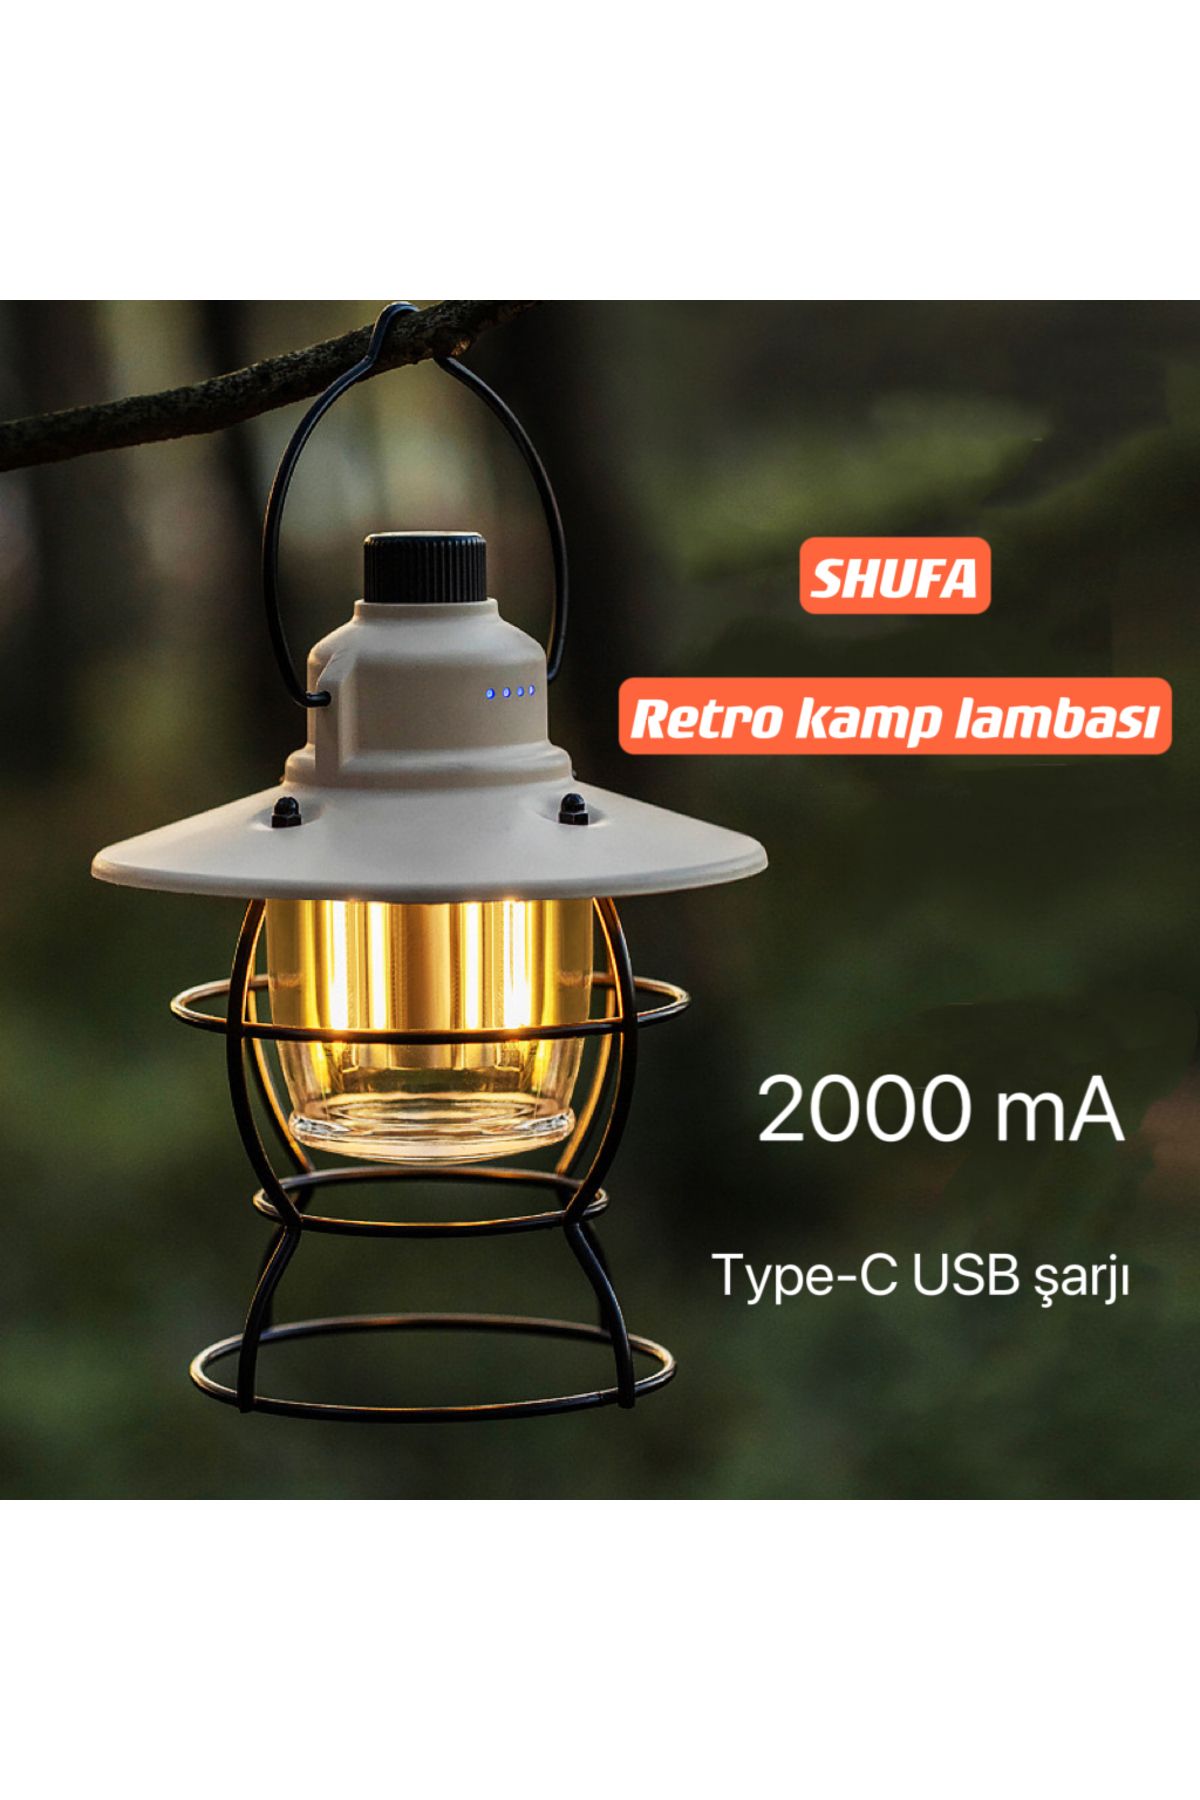 SHUFA SHUFAN ostaljik ışığı ayarlanabilir USB Şarjlı Ledli Kamp Lambası 2000mA